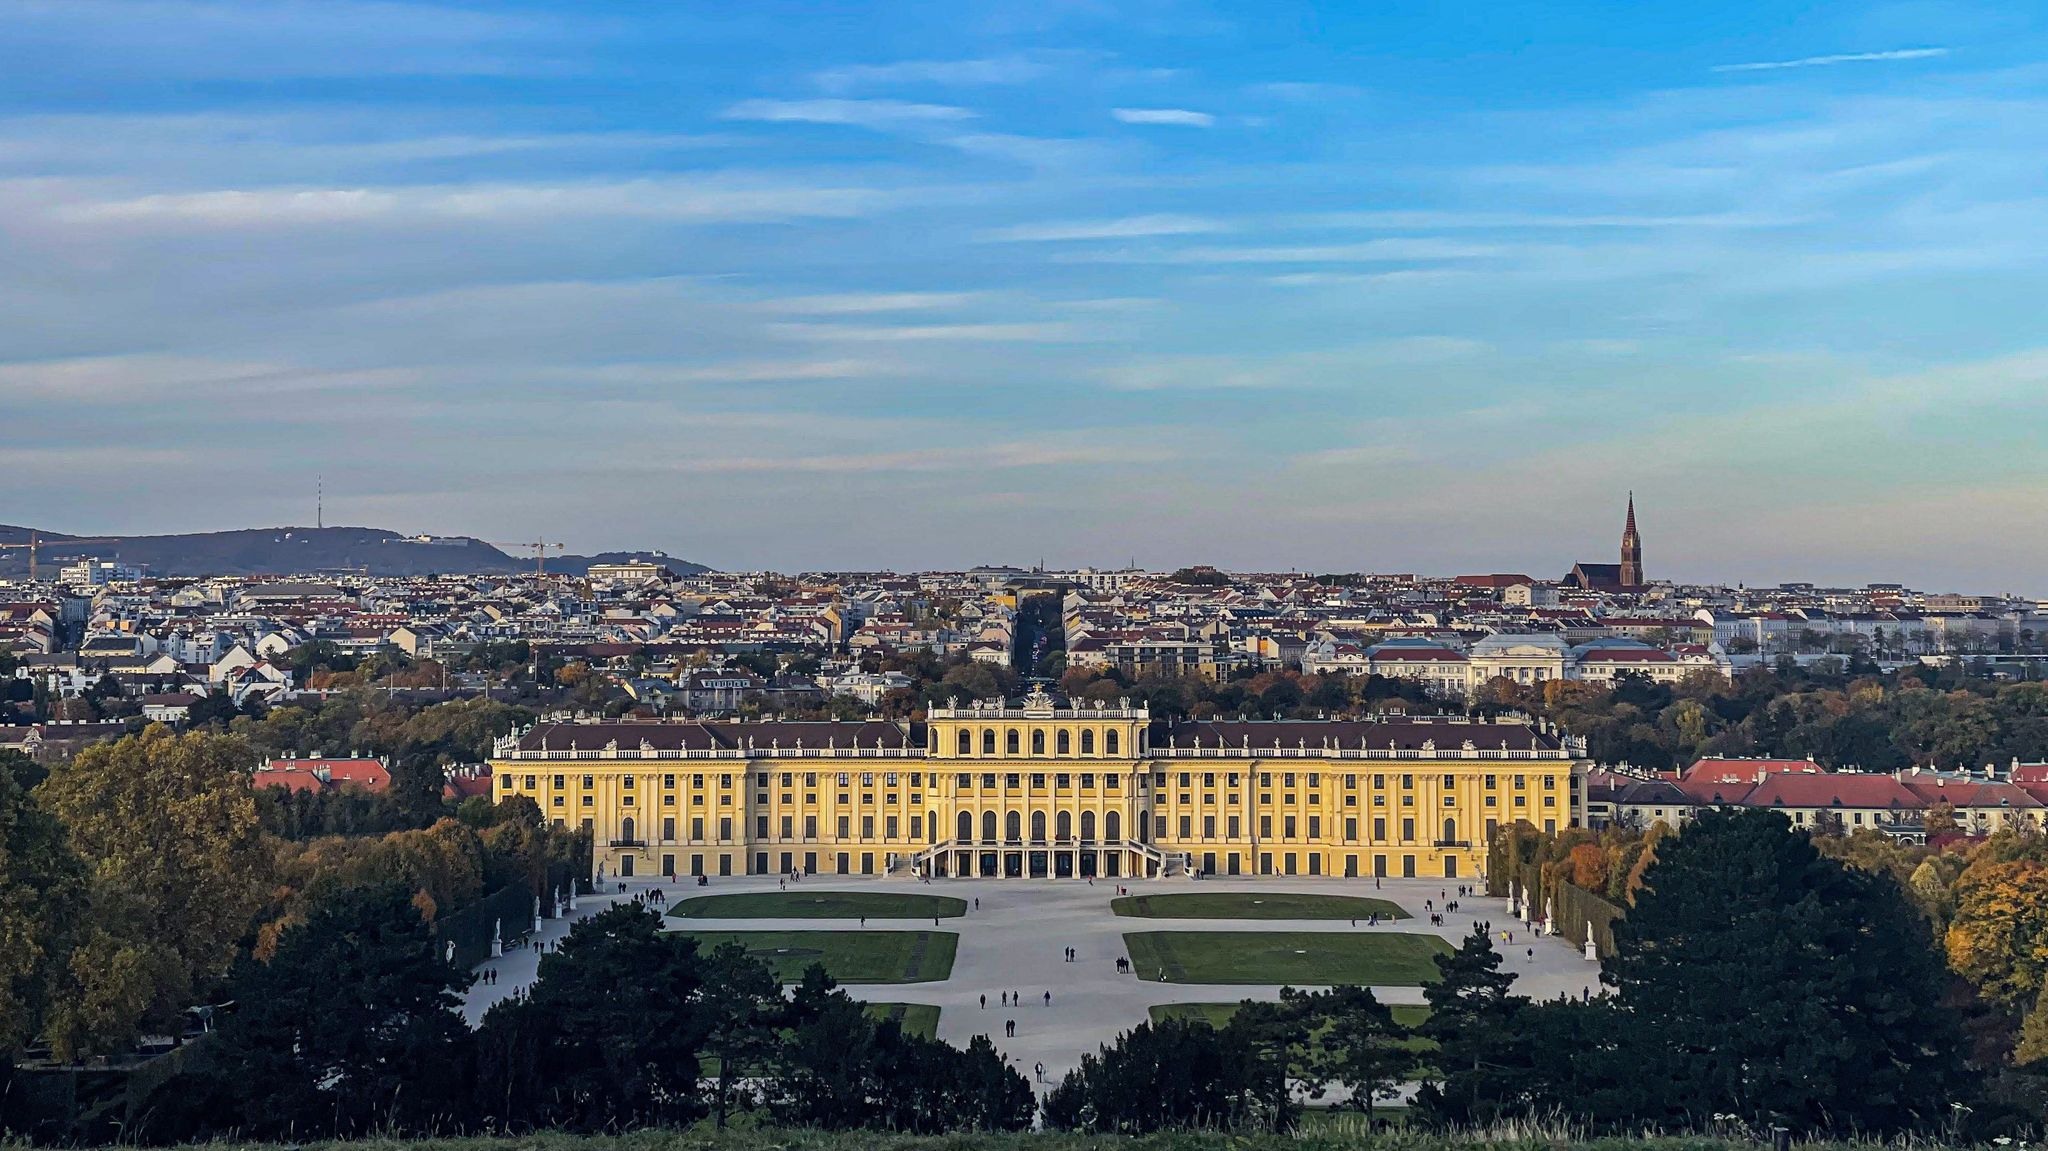 Schönbrunn Palace Park in Vienna